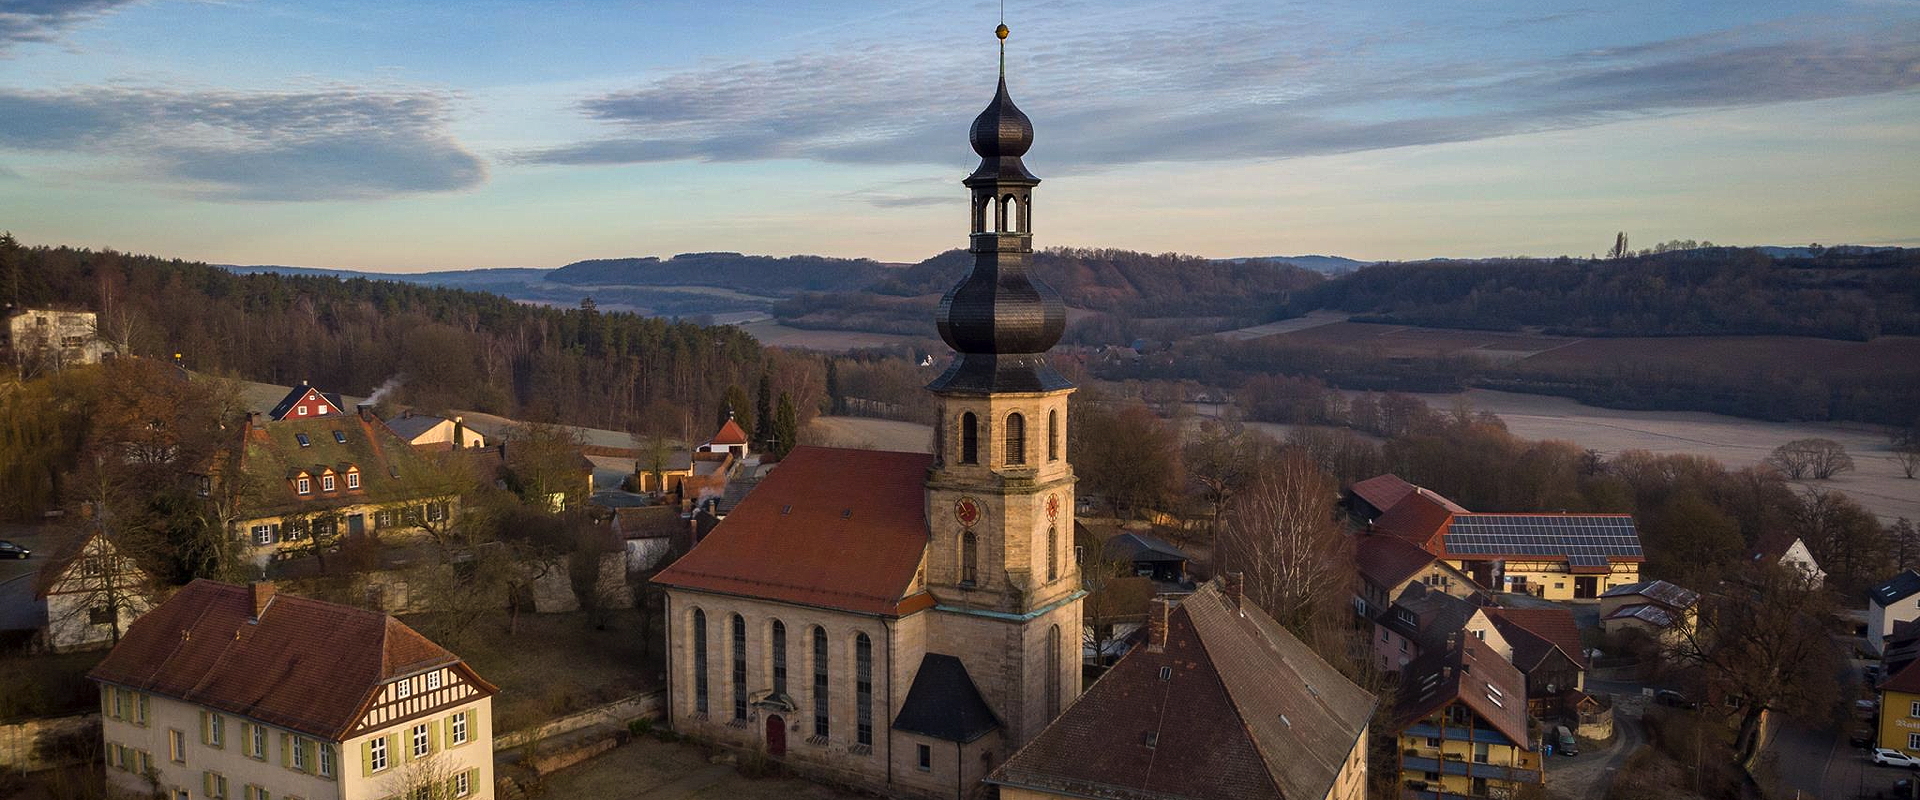 Luftaufnahme der Kirche in Trebgast